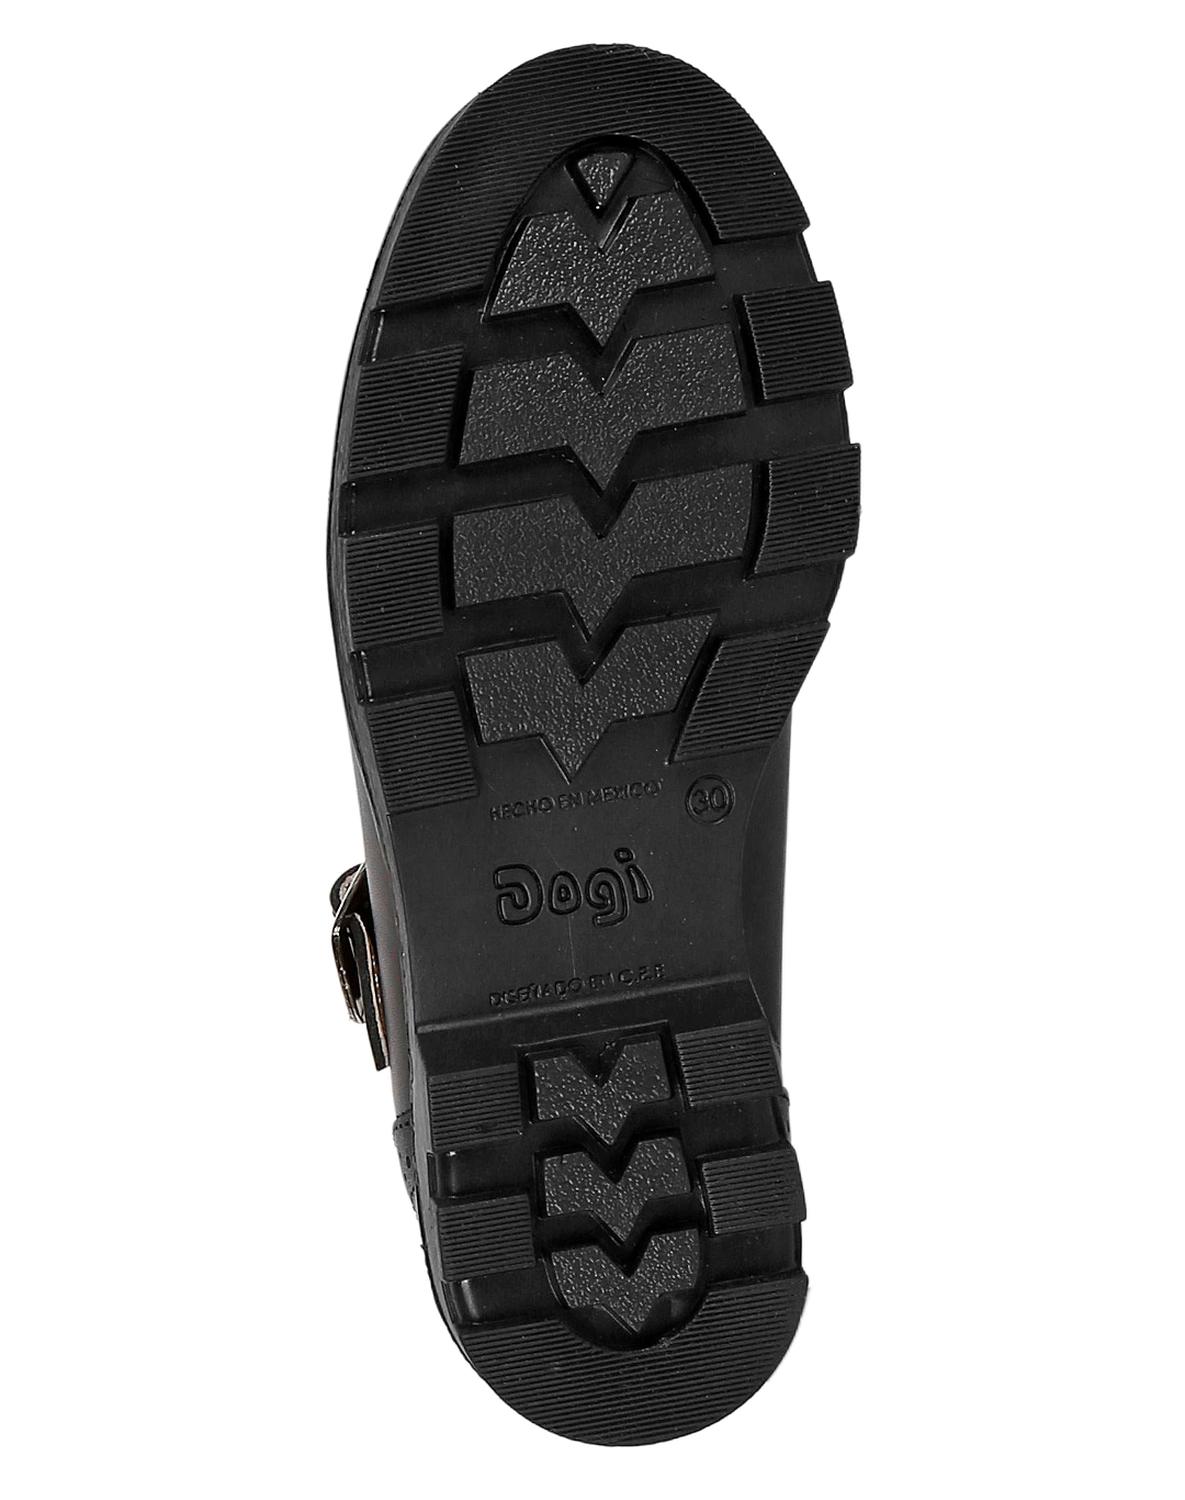 Zapato Escolar Piso Niña Negro Piel Dogi 04503803